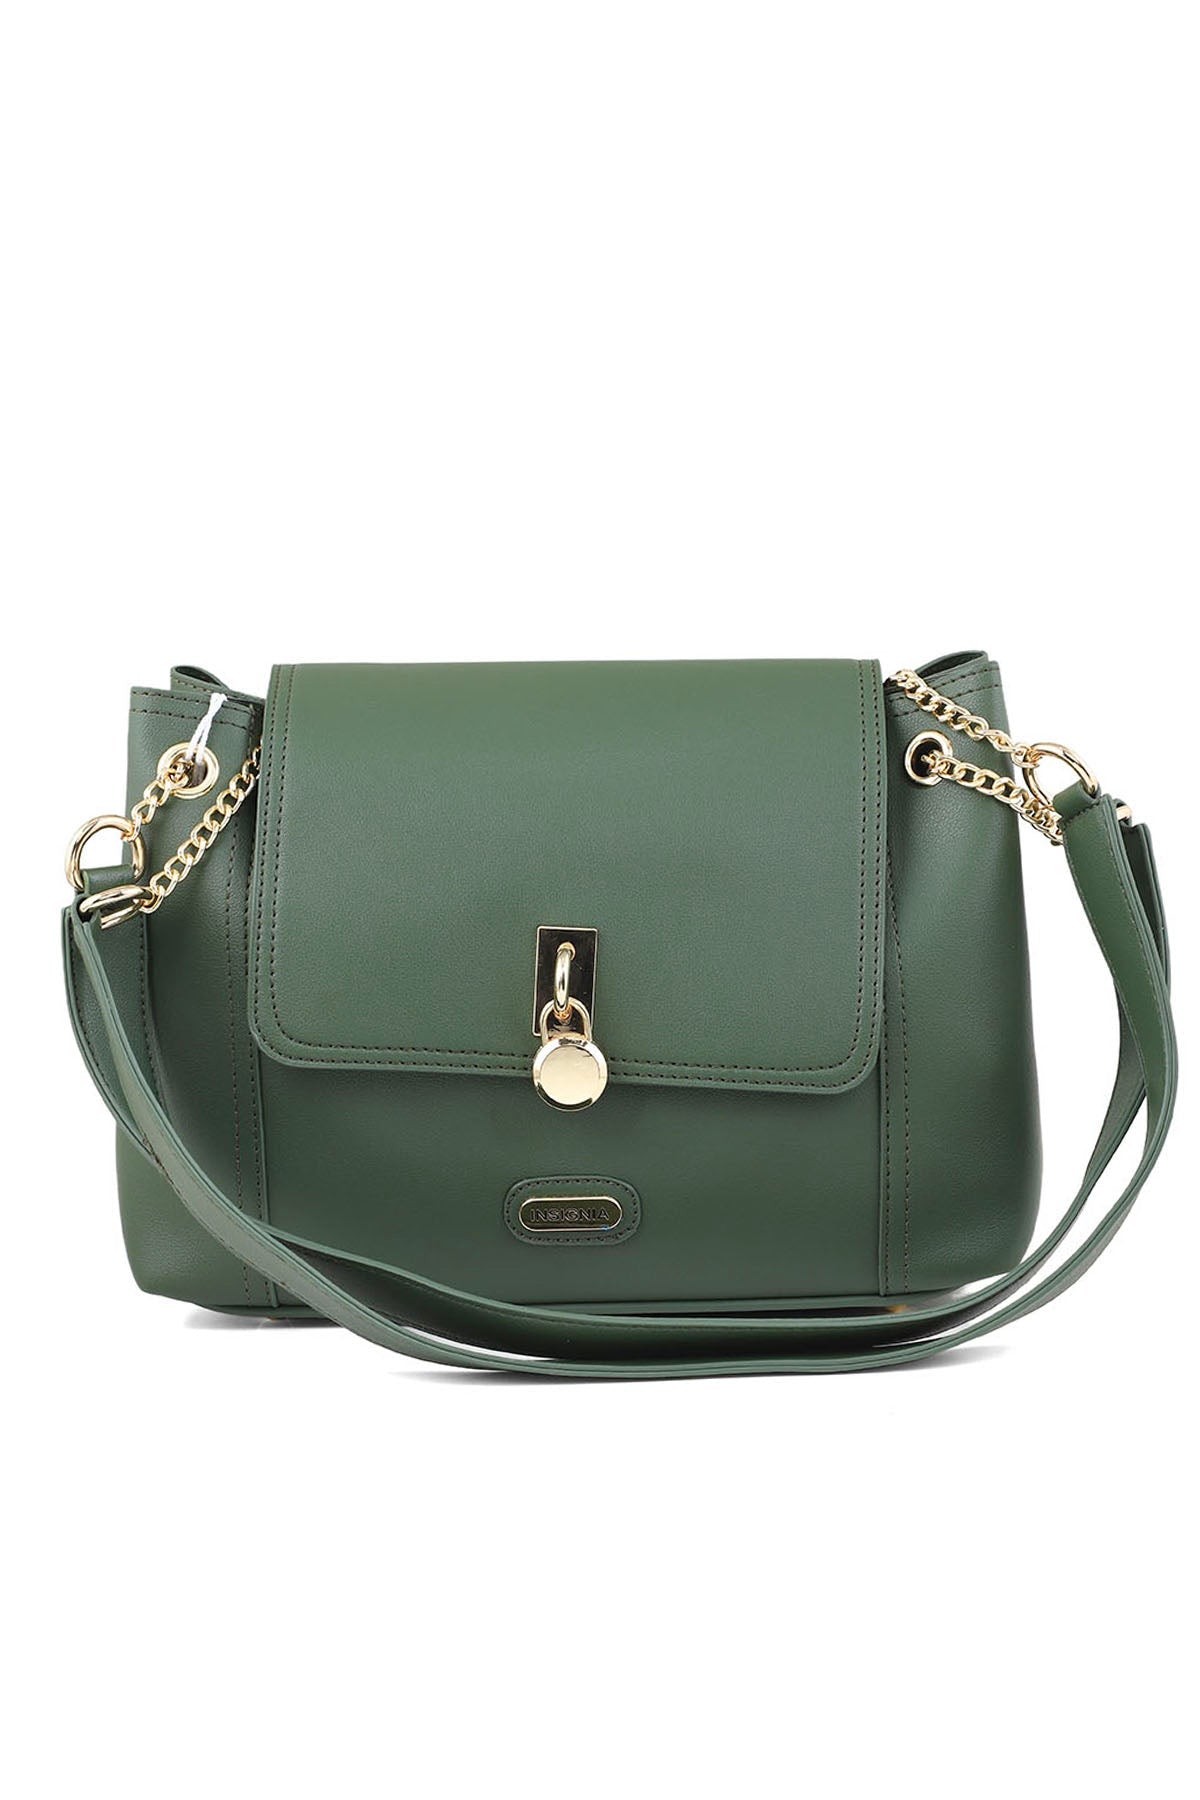 Flap Shoulder Bags B15050-Green